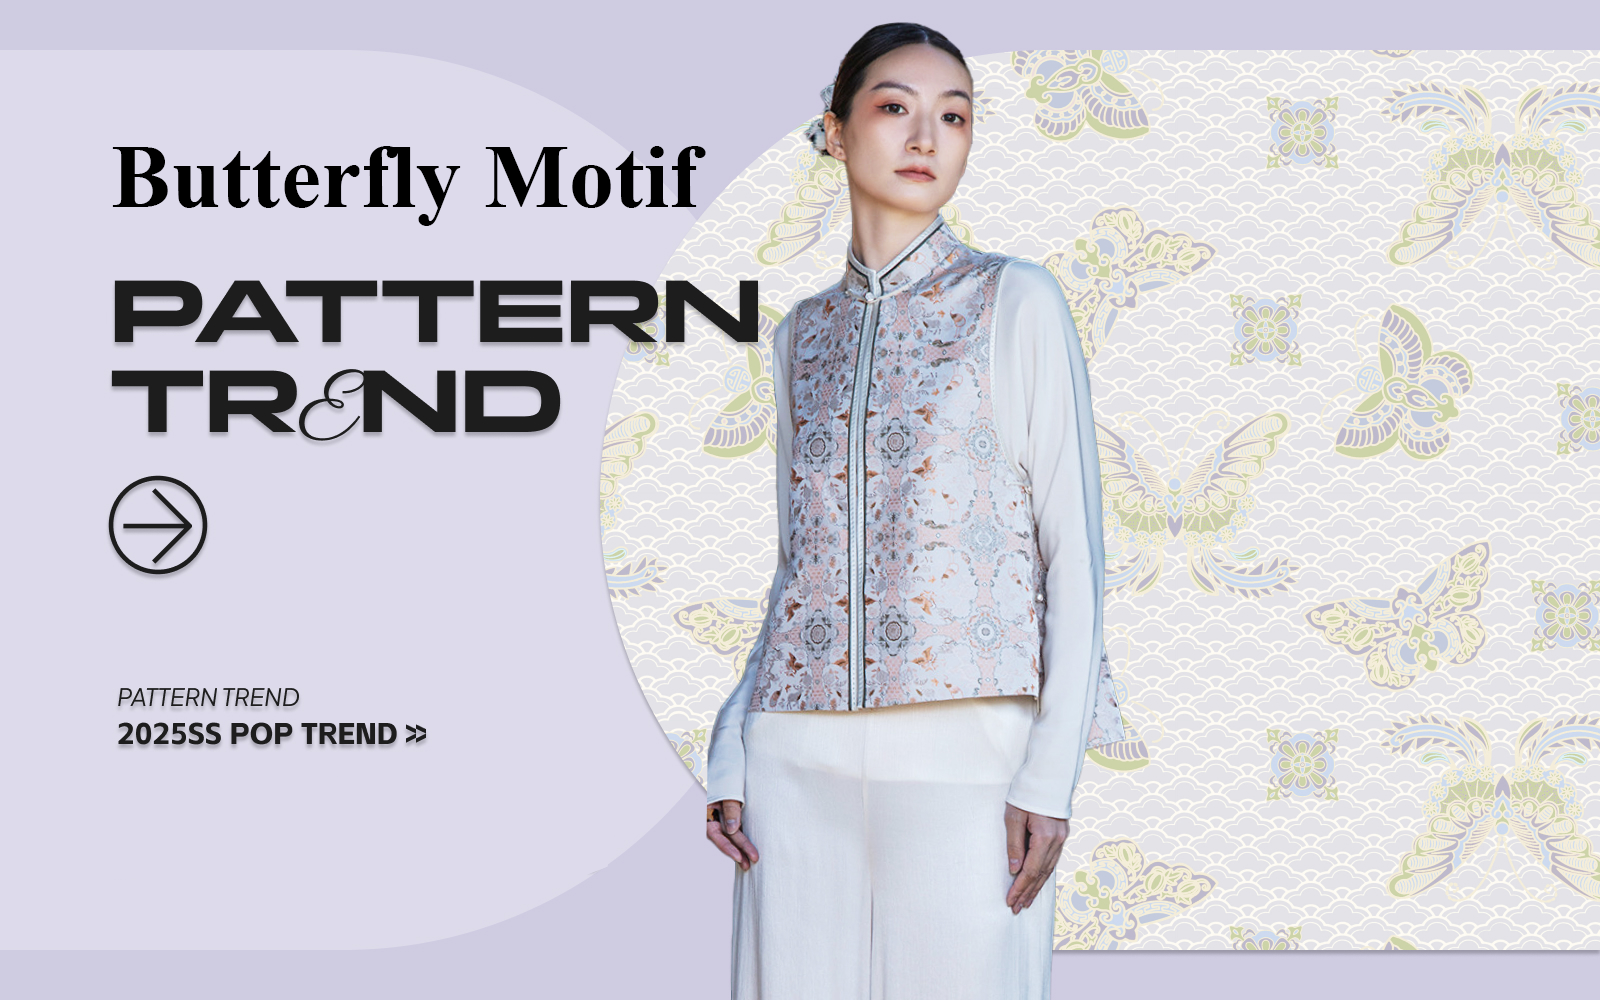 Butterfly Motif -- The Pattern Trend for Womenswear